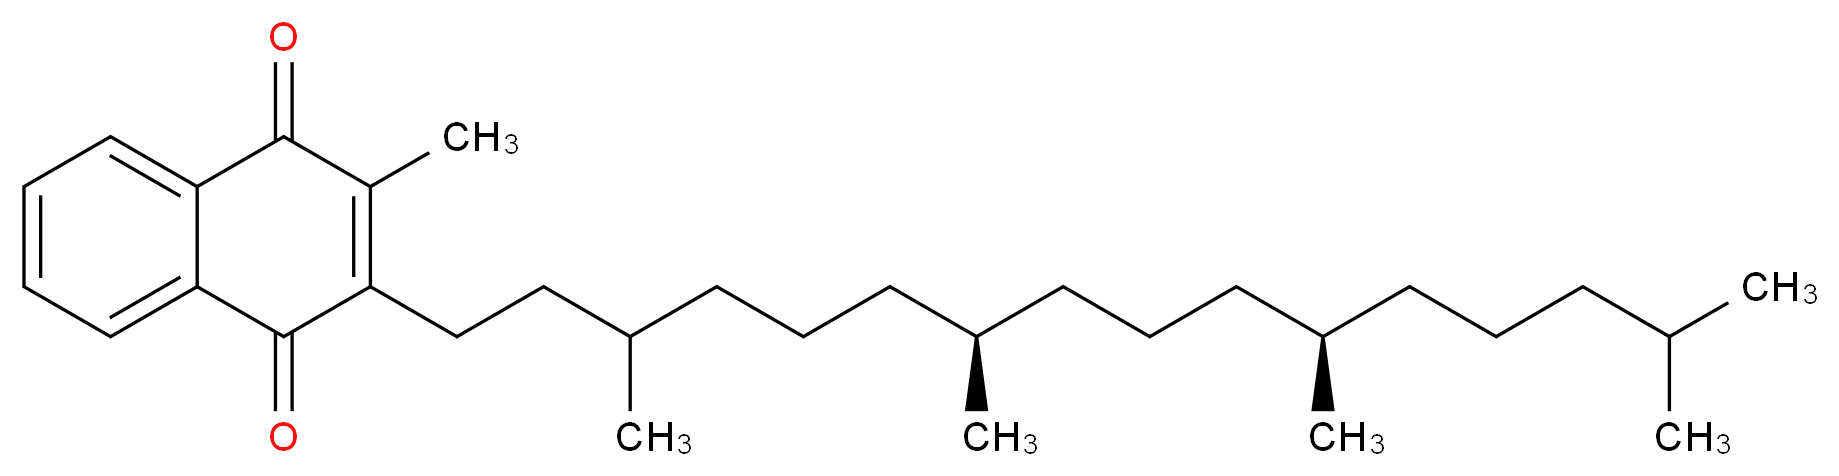 2-methyl-3-[(7R,11R)-3,7,11,15-tetramethylhexadecyl]-1,4-dihydronaphthalene-1,4-dione_分子结构_CAS_64236-23-3